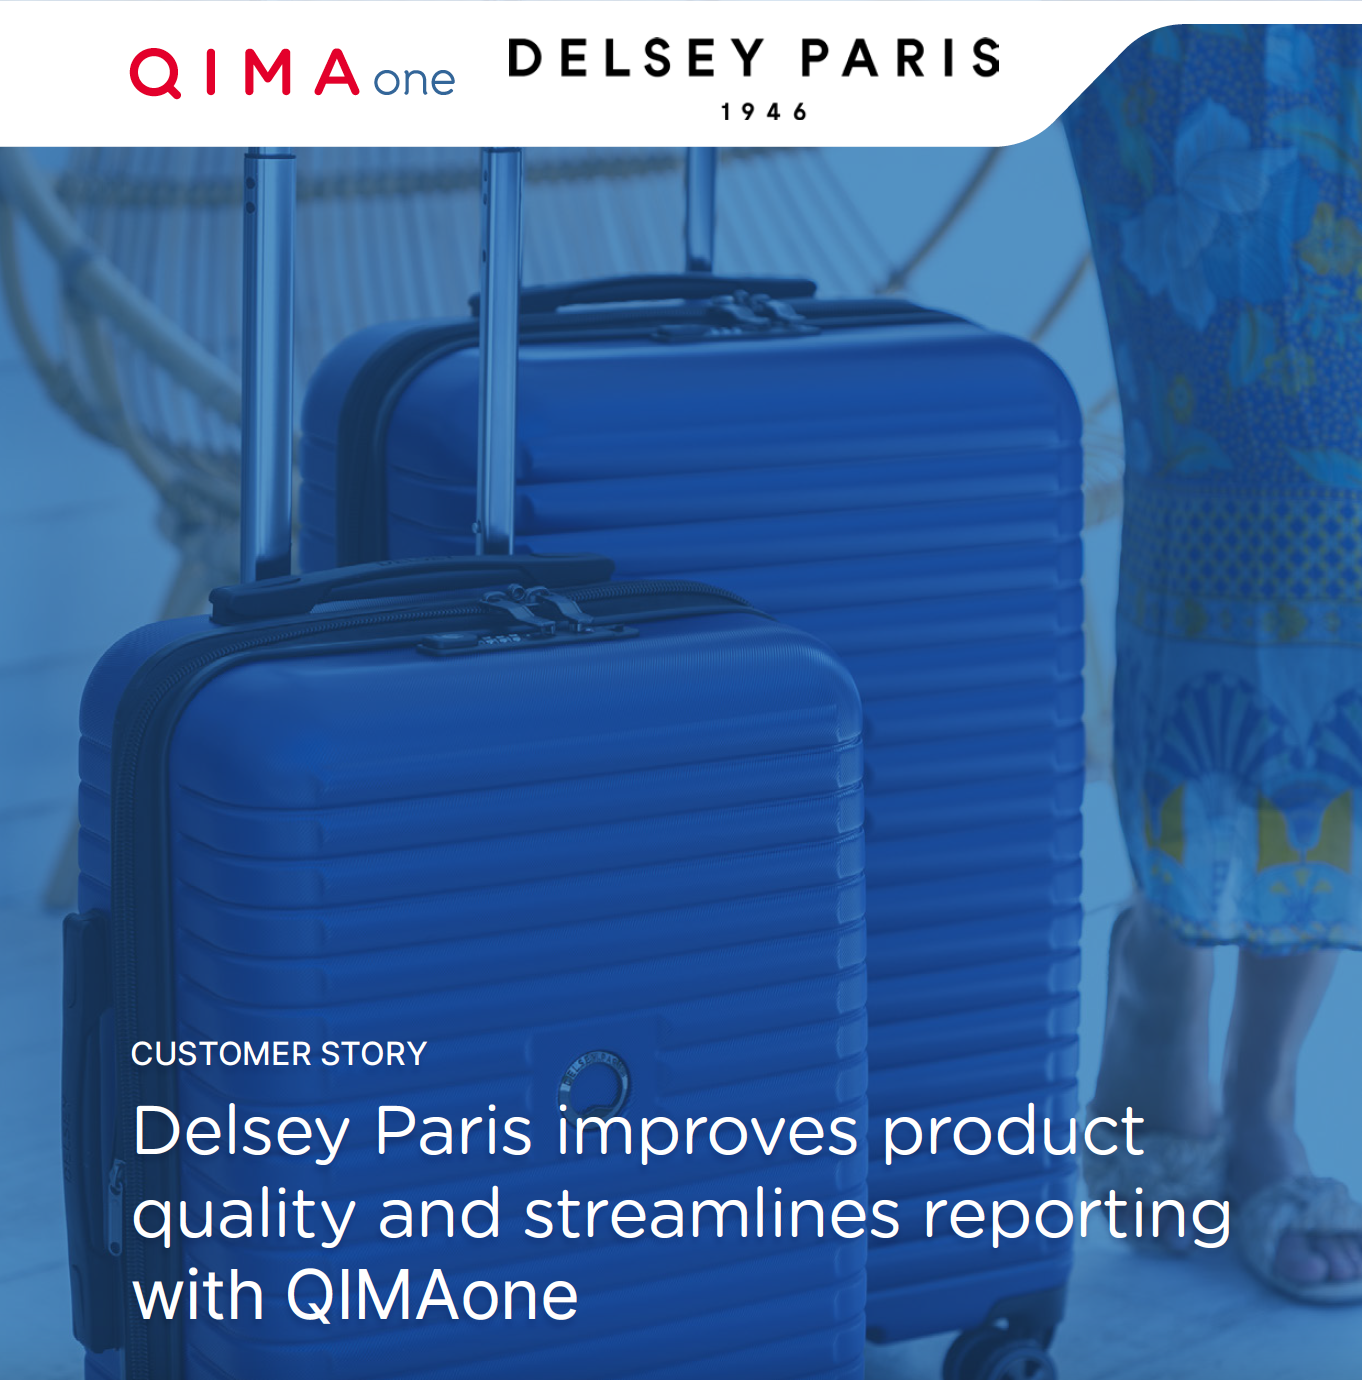 Delsey Paris améliore la qualité de ses produits et standardise ses rapports d'inspection grâce à QIMAone